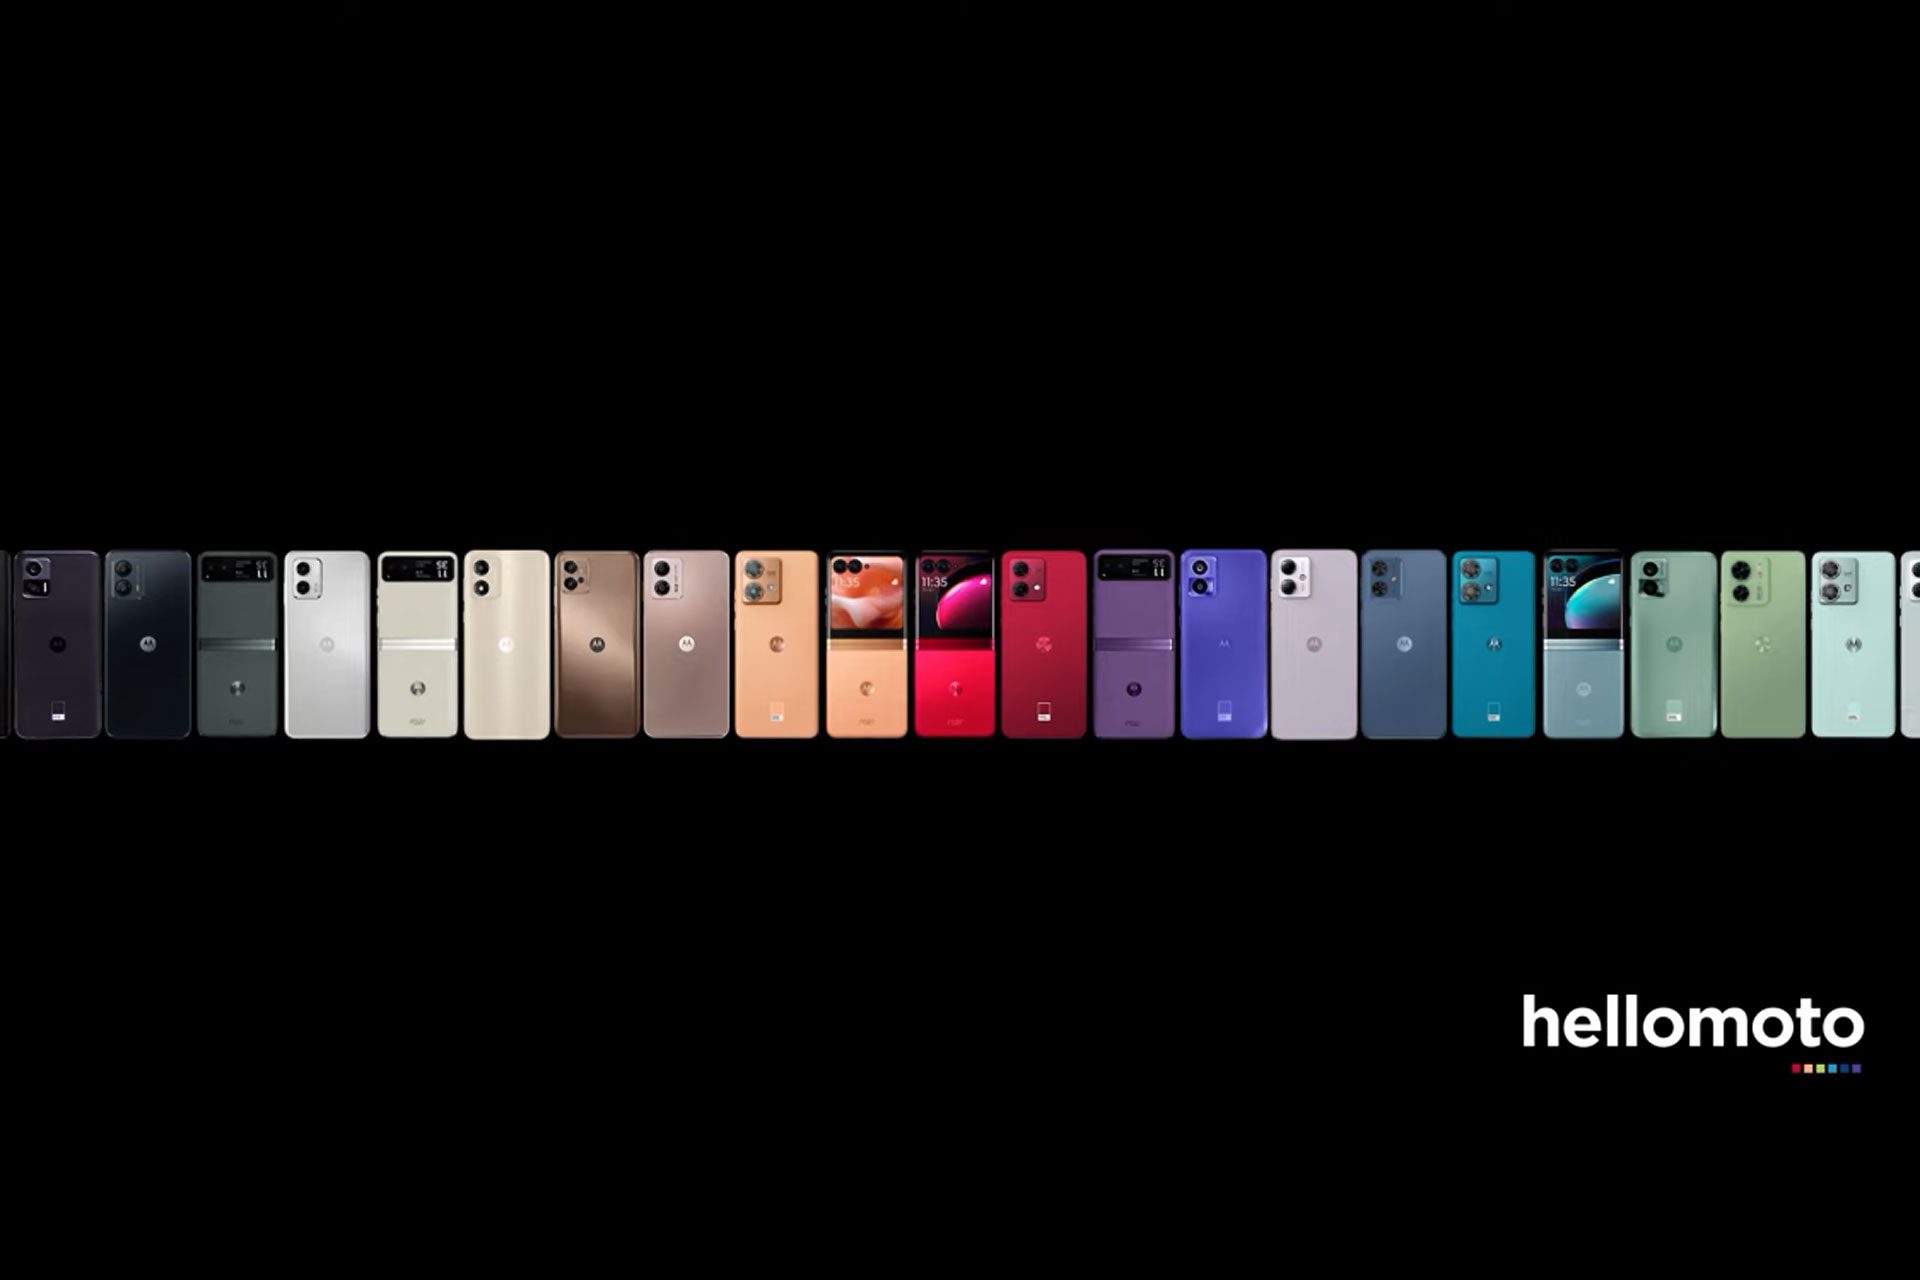 Motorola traduz estratégia ‘lifestyle-tech’ em nova campanha integrando o melhor da tecnologia com estilo e uma explosão de cores vibrantes